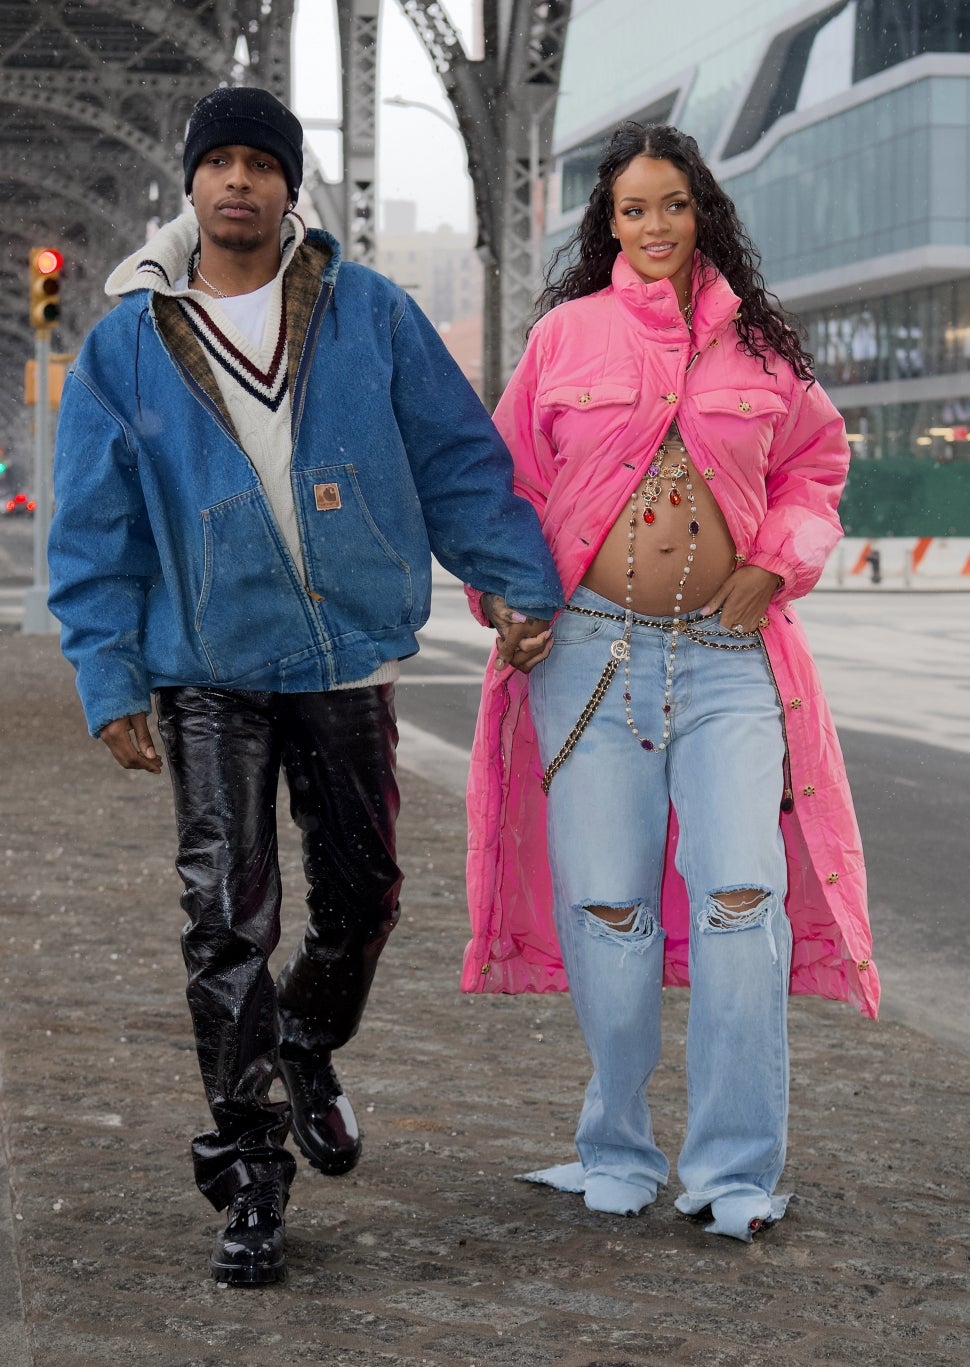 Rihanna and A$AP Rocky in Harlem